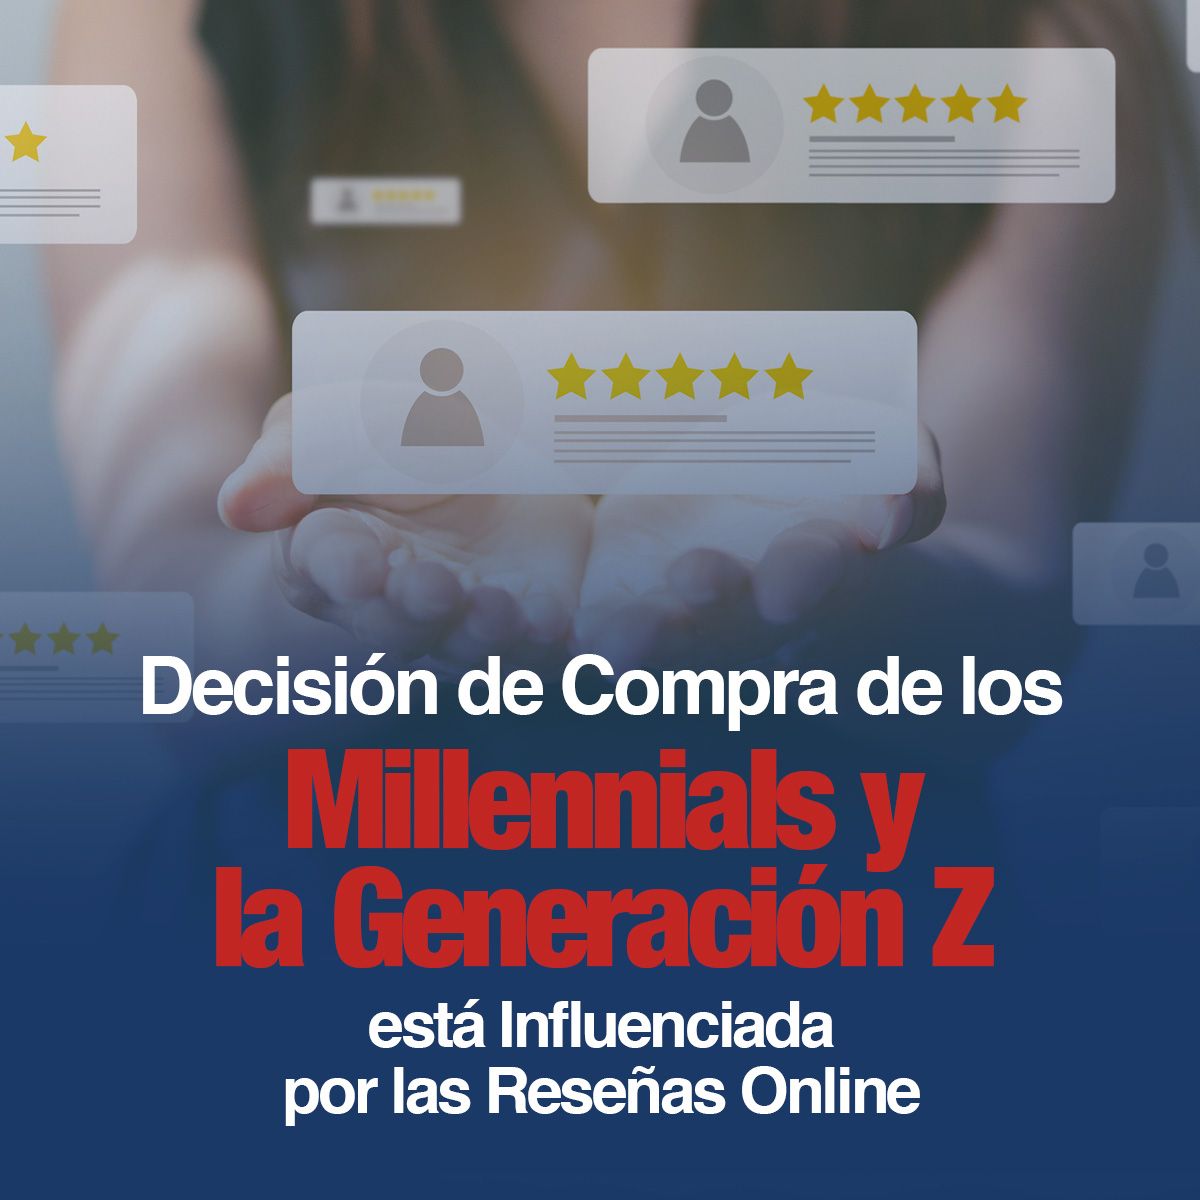 Decisión de Compra de los Millennials y la Generación Z está Influenciada por las Reseñas Online